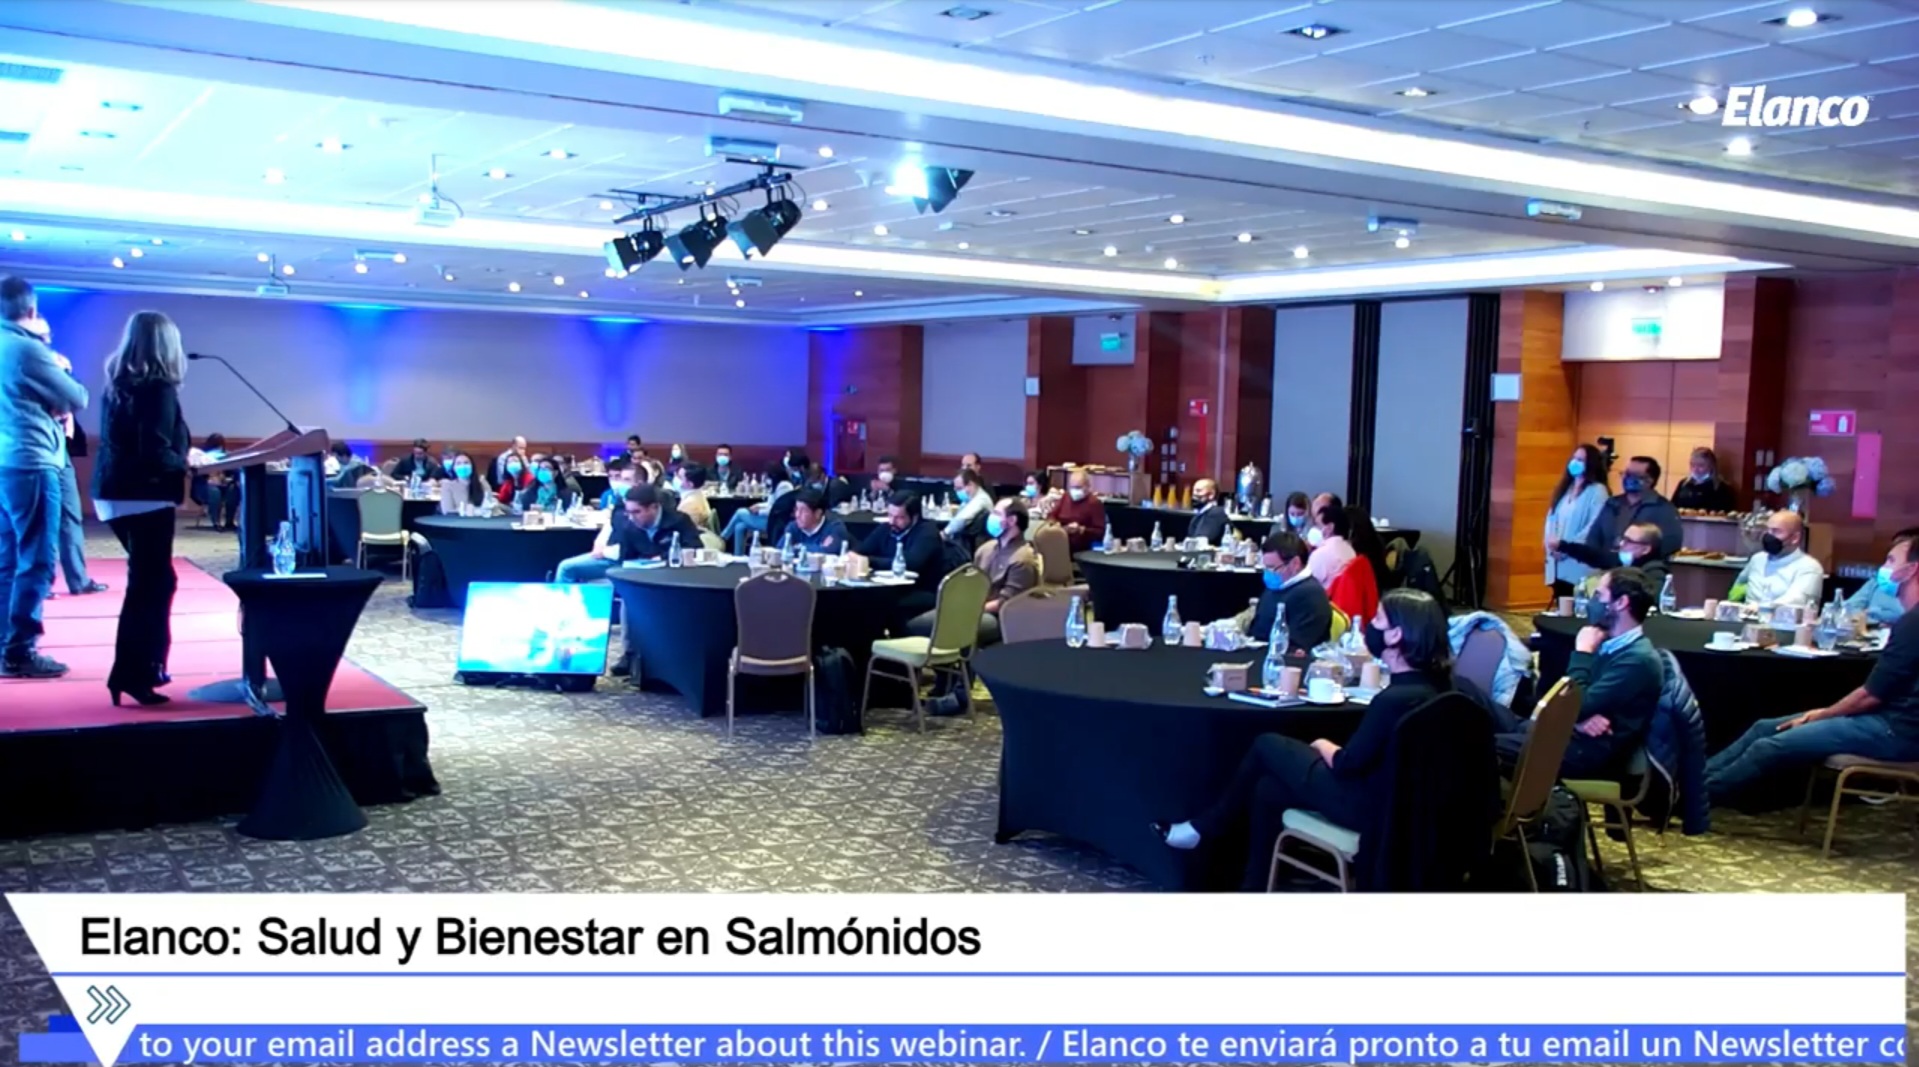 Con éxito se desarrolló seminario sobre Salud y Bienestar en Salmónidos organizado por Elanco